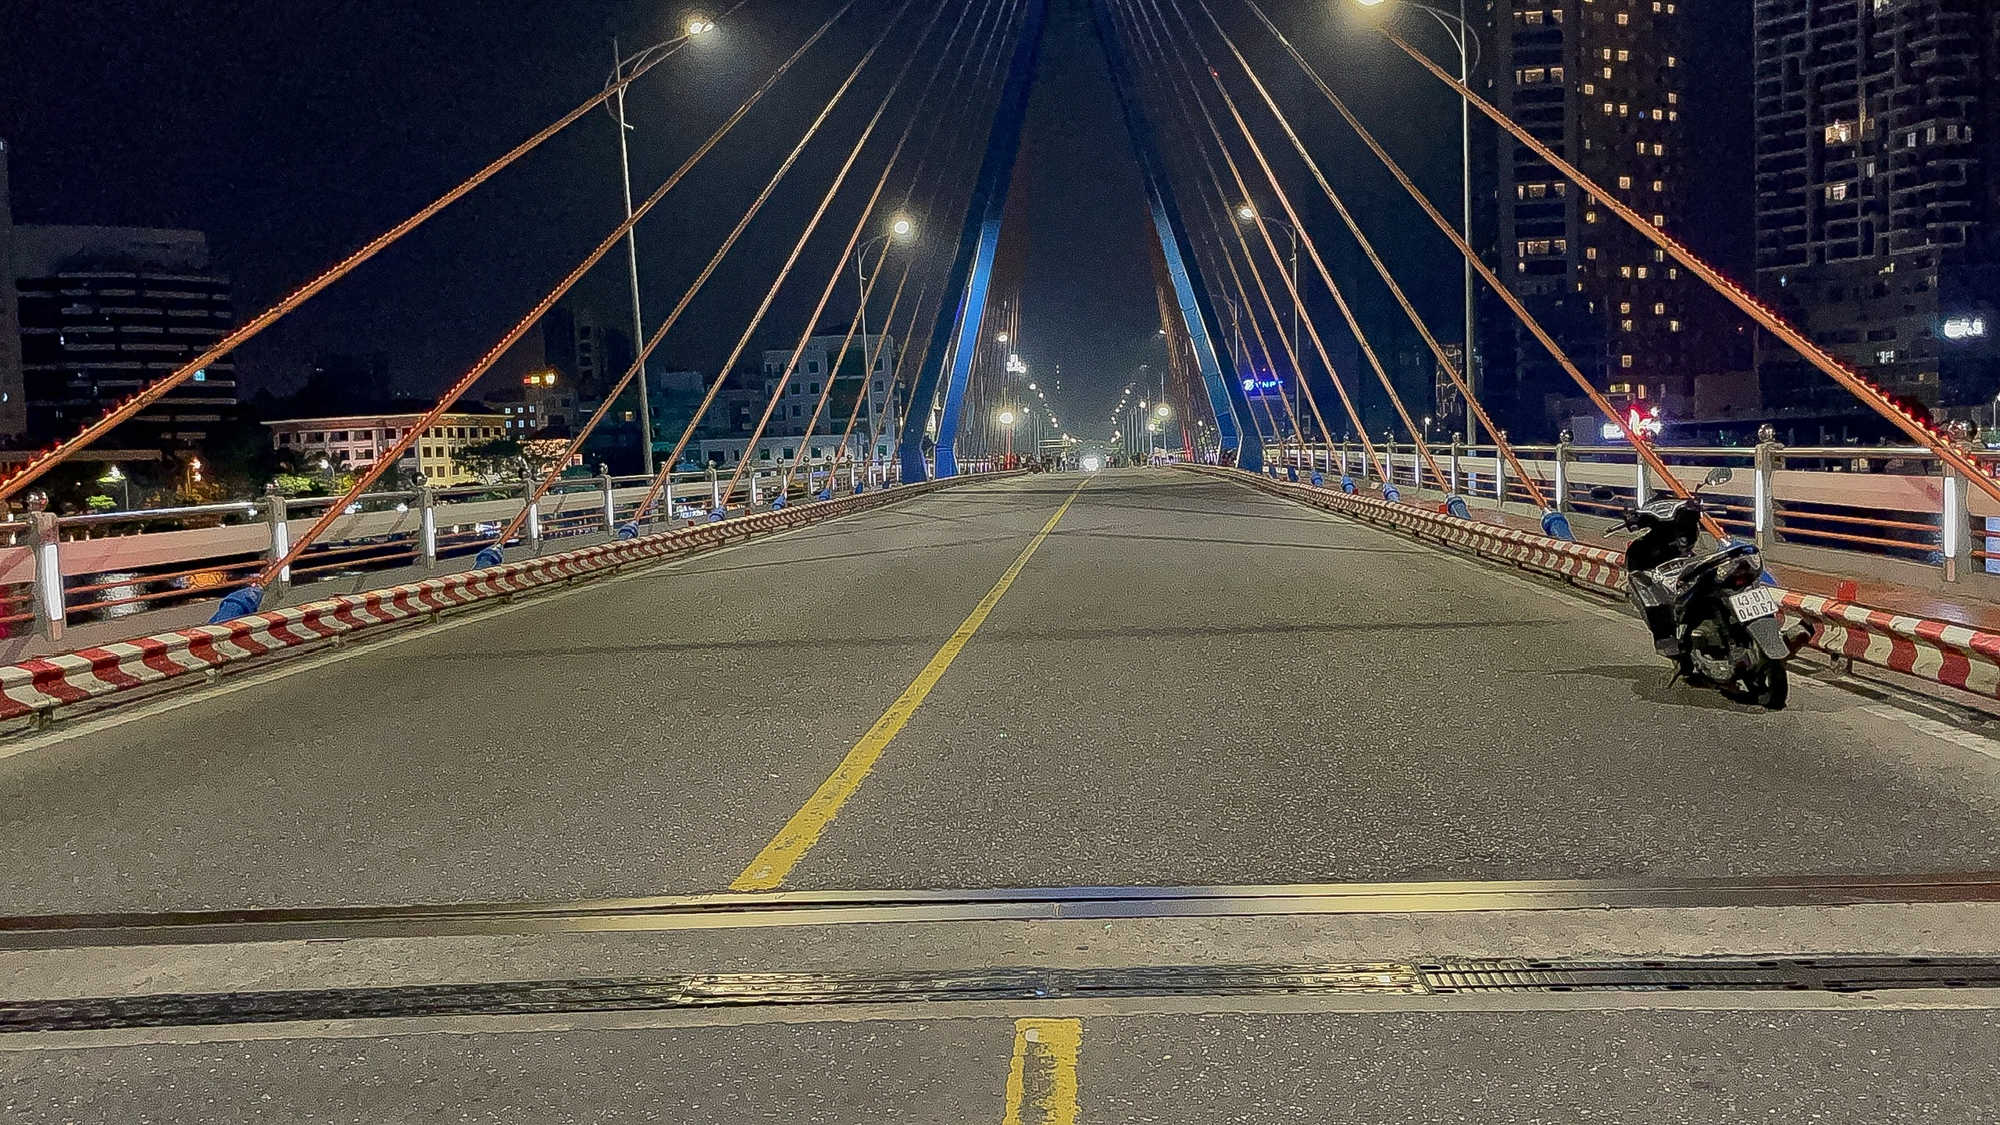 Ngắm trọn khoảnh khắc cầu sông Hàn quay trong đêm  - Ảnh 6.